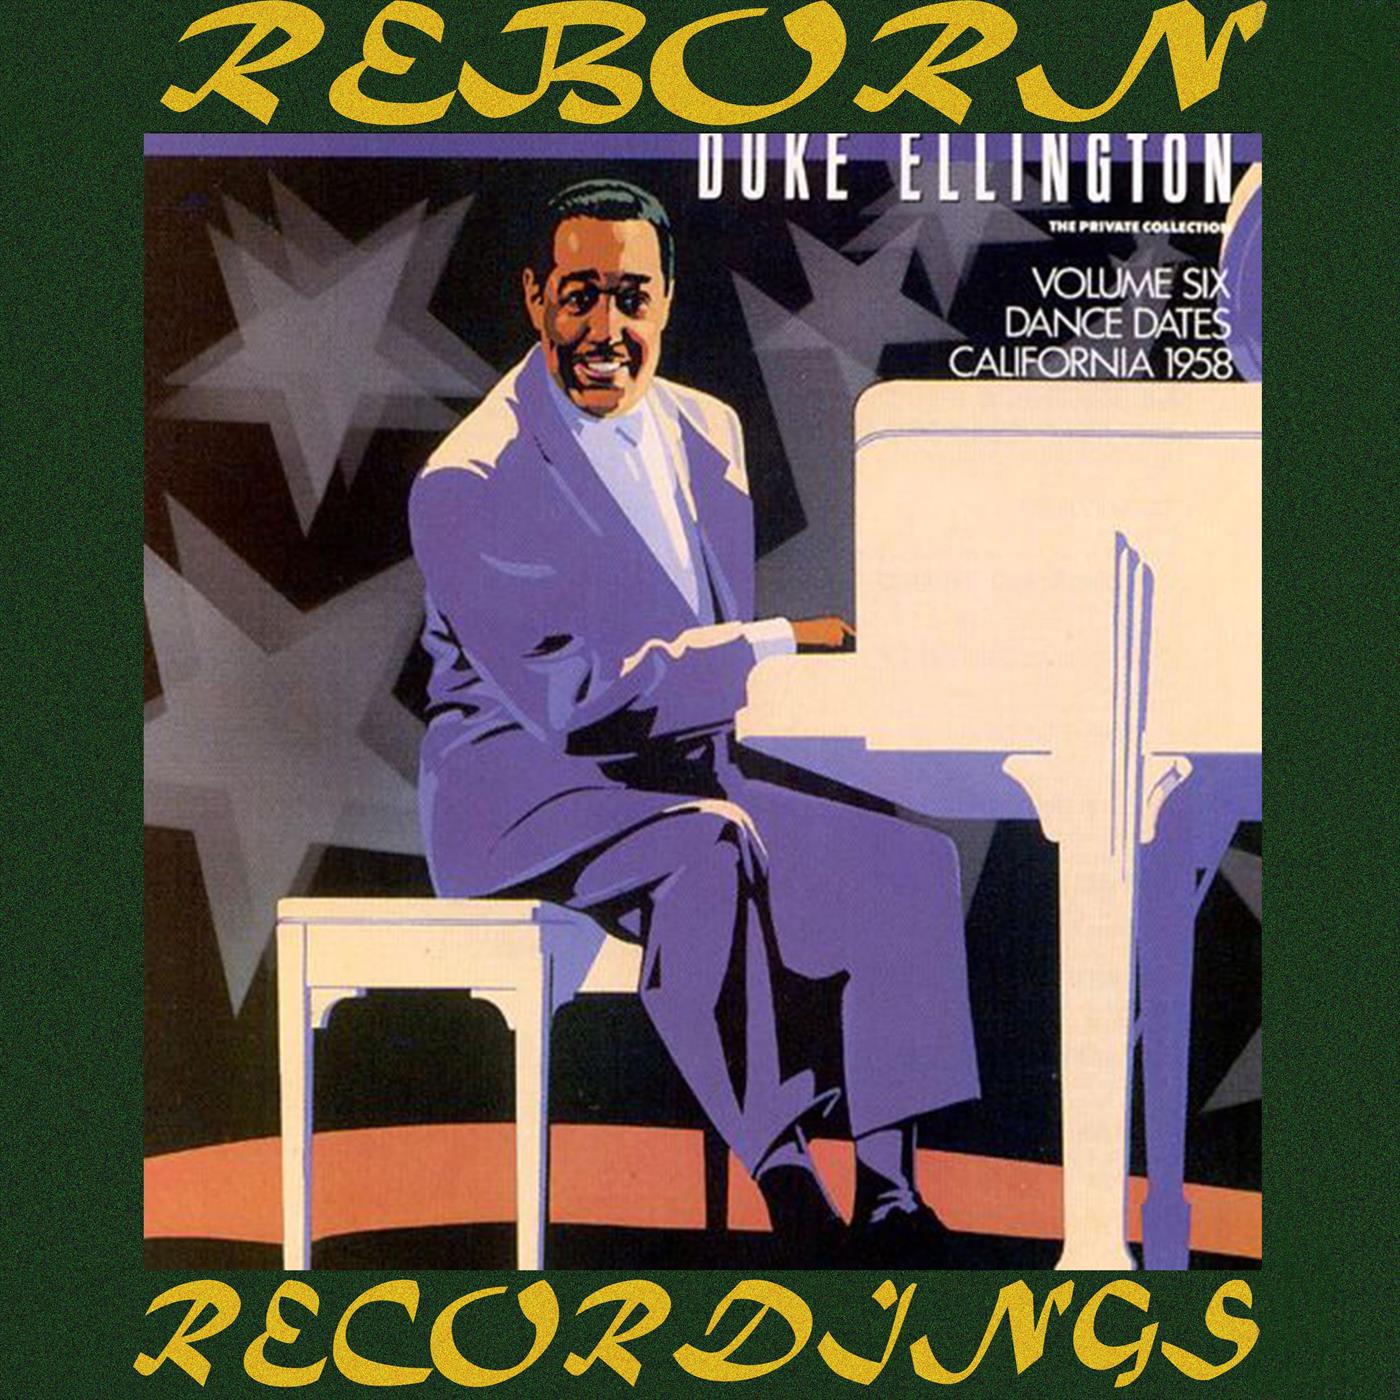 Duke Ellington Private Collection, - Vol. 6, Dance Dates, California 1958 (HD Remastered)